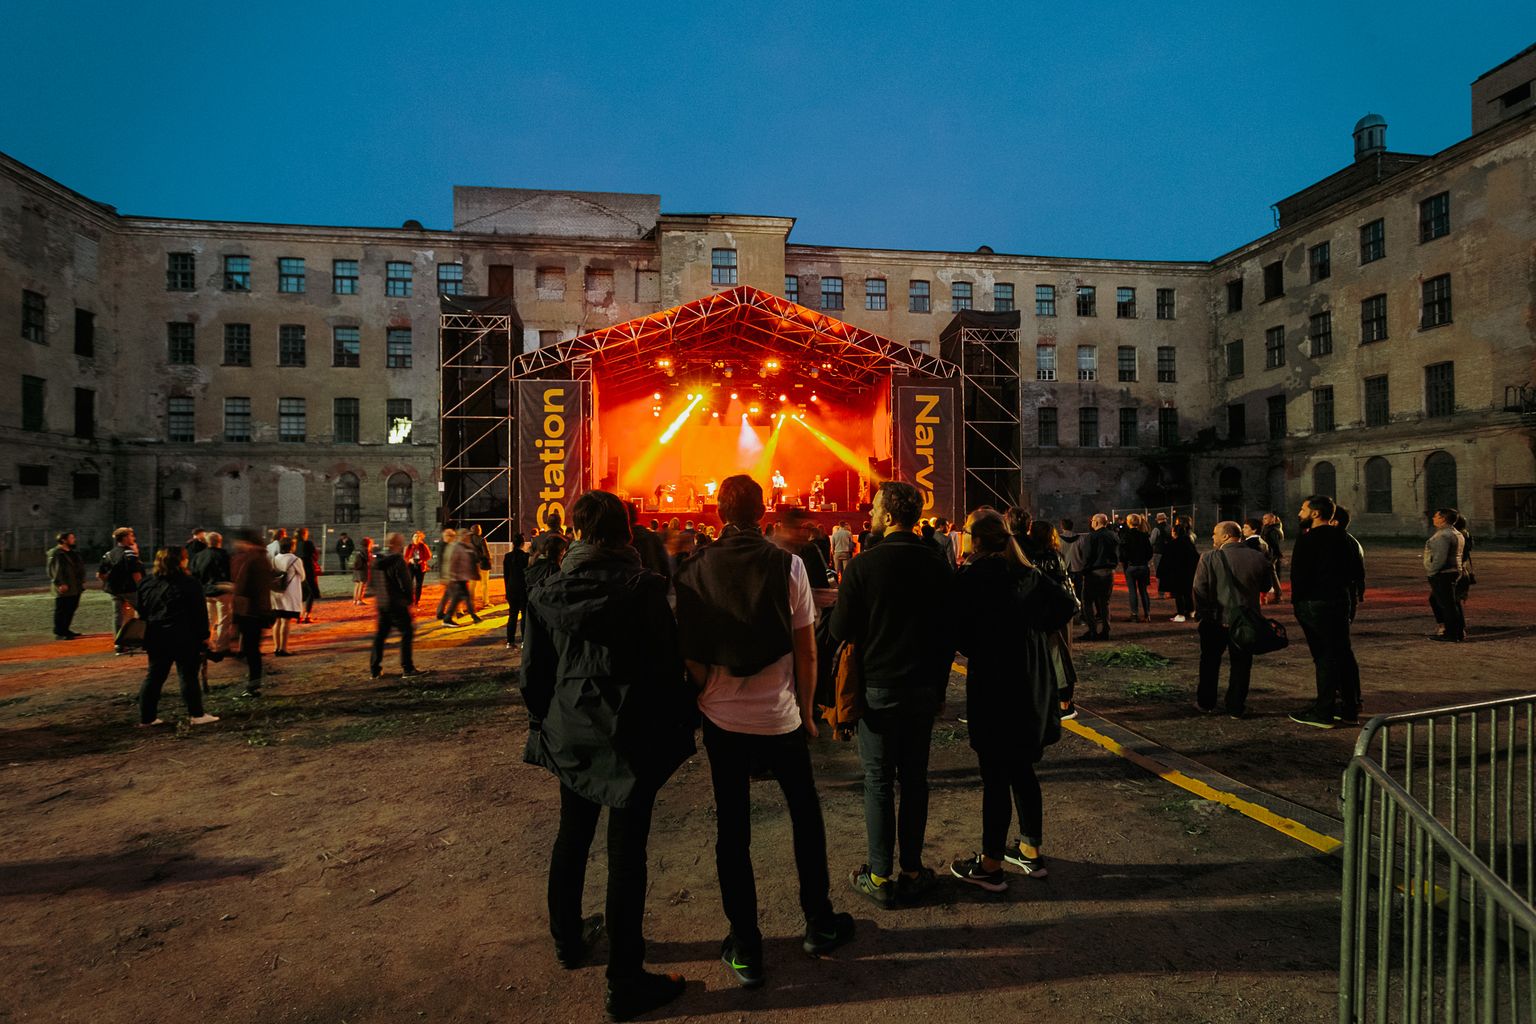 Центр фестиваля, который стартовал в 2018 году, ежегодно располагается в разных местах Нарвы: в квартале Кренгольм, в театральном центре "Vaba Lava", на речном променаде. В этом году большинство артистов выступят в Нарвском замке.